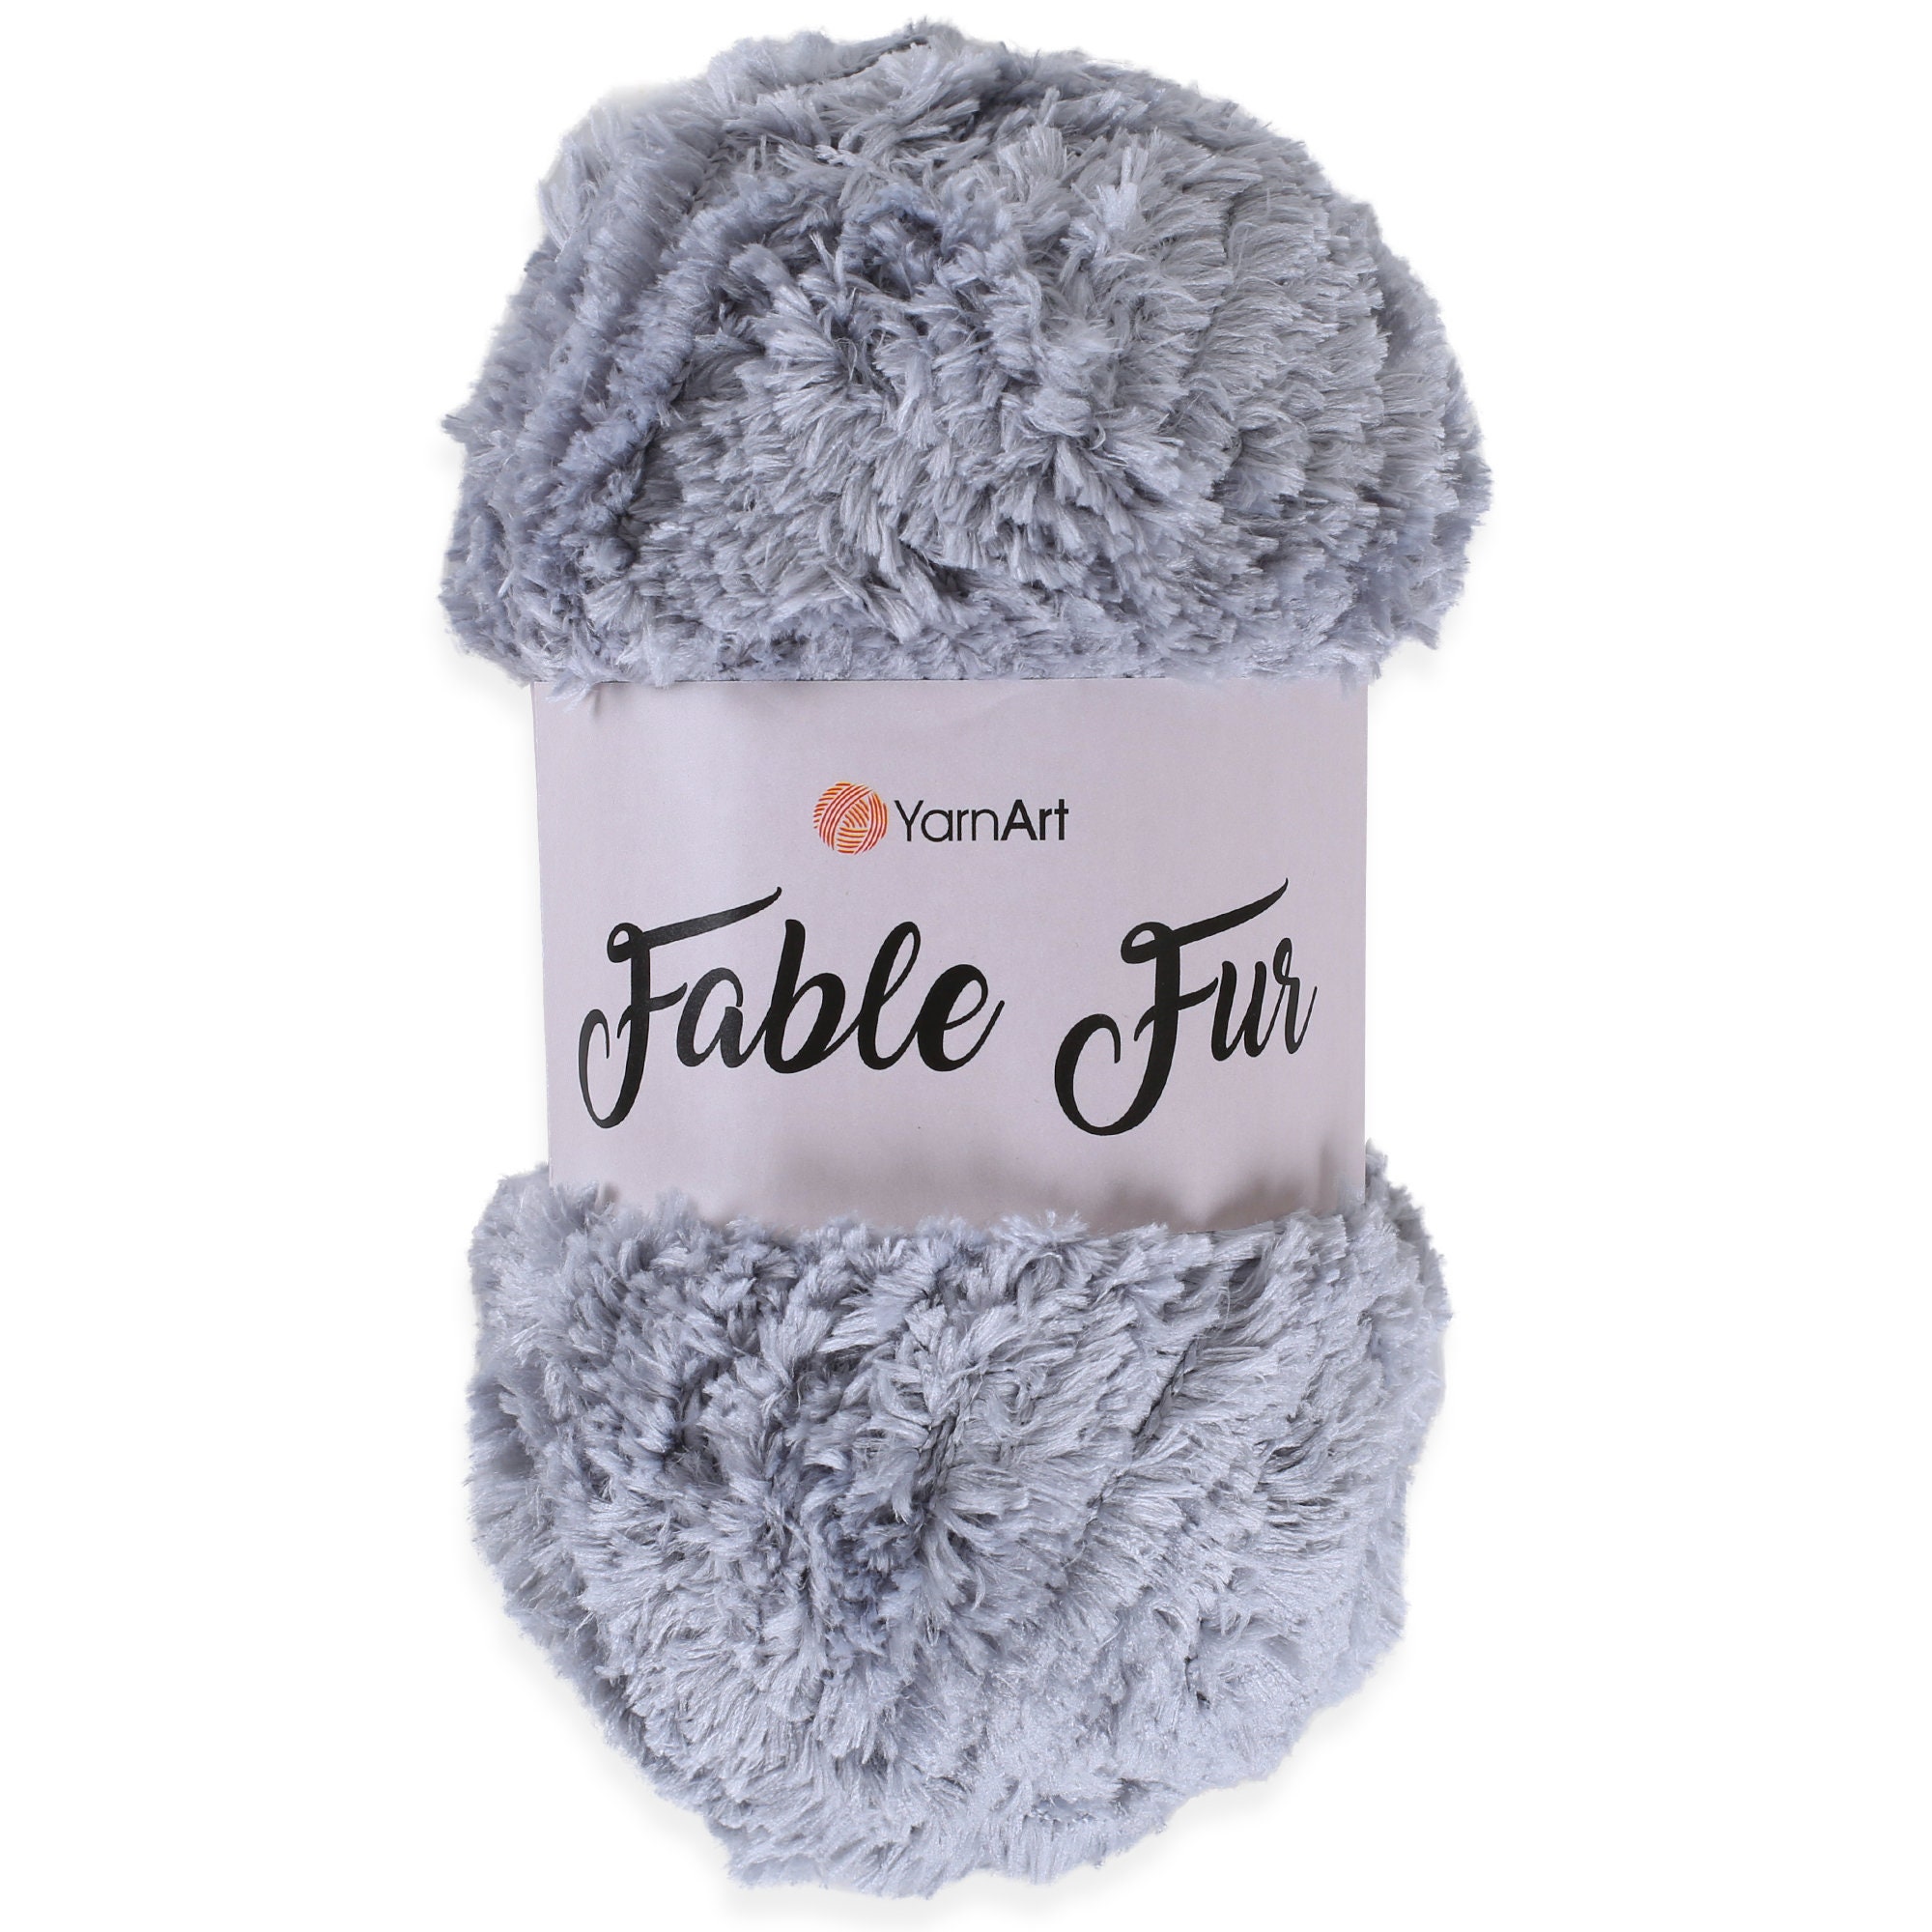 Yarnart Fable Fur Yarn (100gr), Soft Fur Yarn Chunky Fluffy Faux Fur Yarn Fuzzy Fur Yarn Eyelash Yarn for Crochet Knit Clothes Knitting Super Bulky